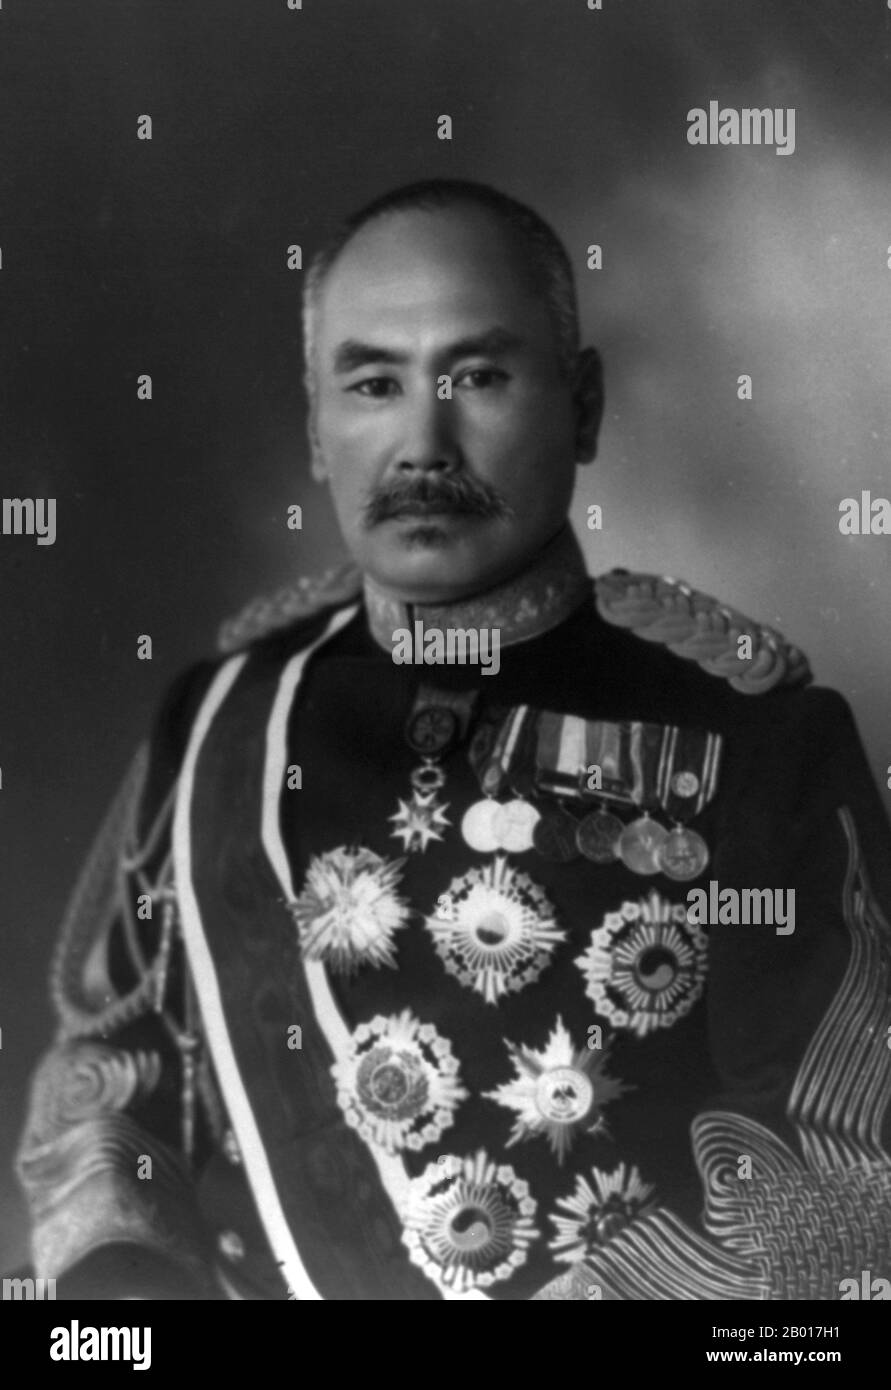 Japón: Conde Hasegawa Yoshimichi (1 de octubre de 1850 - 27 de enero de 1924), Gobernador General de Corea (r. 1916-1919), principios del siglo 20th. El conde Hasegawa Yoshimichi fue mariscal de campo en el Ejército Imperial Japonés y sirvió como gobernador general japonés de Corea de 1916 a 1919. Sus decoraciones incluían la Orden del Cita de Oro (clase 1st) y la Orden del Crisantemo. Fue hijo de un maestro de esgrima samurai, y luchó por las fuerzas Choshu durante la Guerra de Boshin en 1868. Se unió al recién formado Ejército Imperial Japonés en 1871, sirviendo inicialmente como capitán. Foto de stock